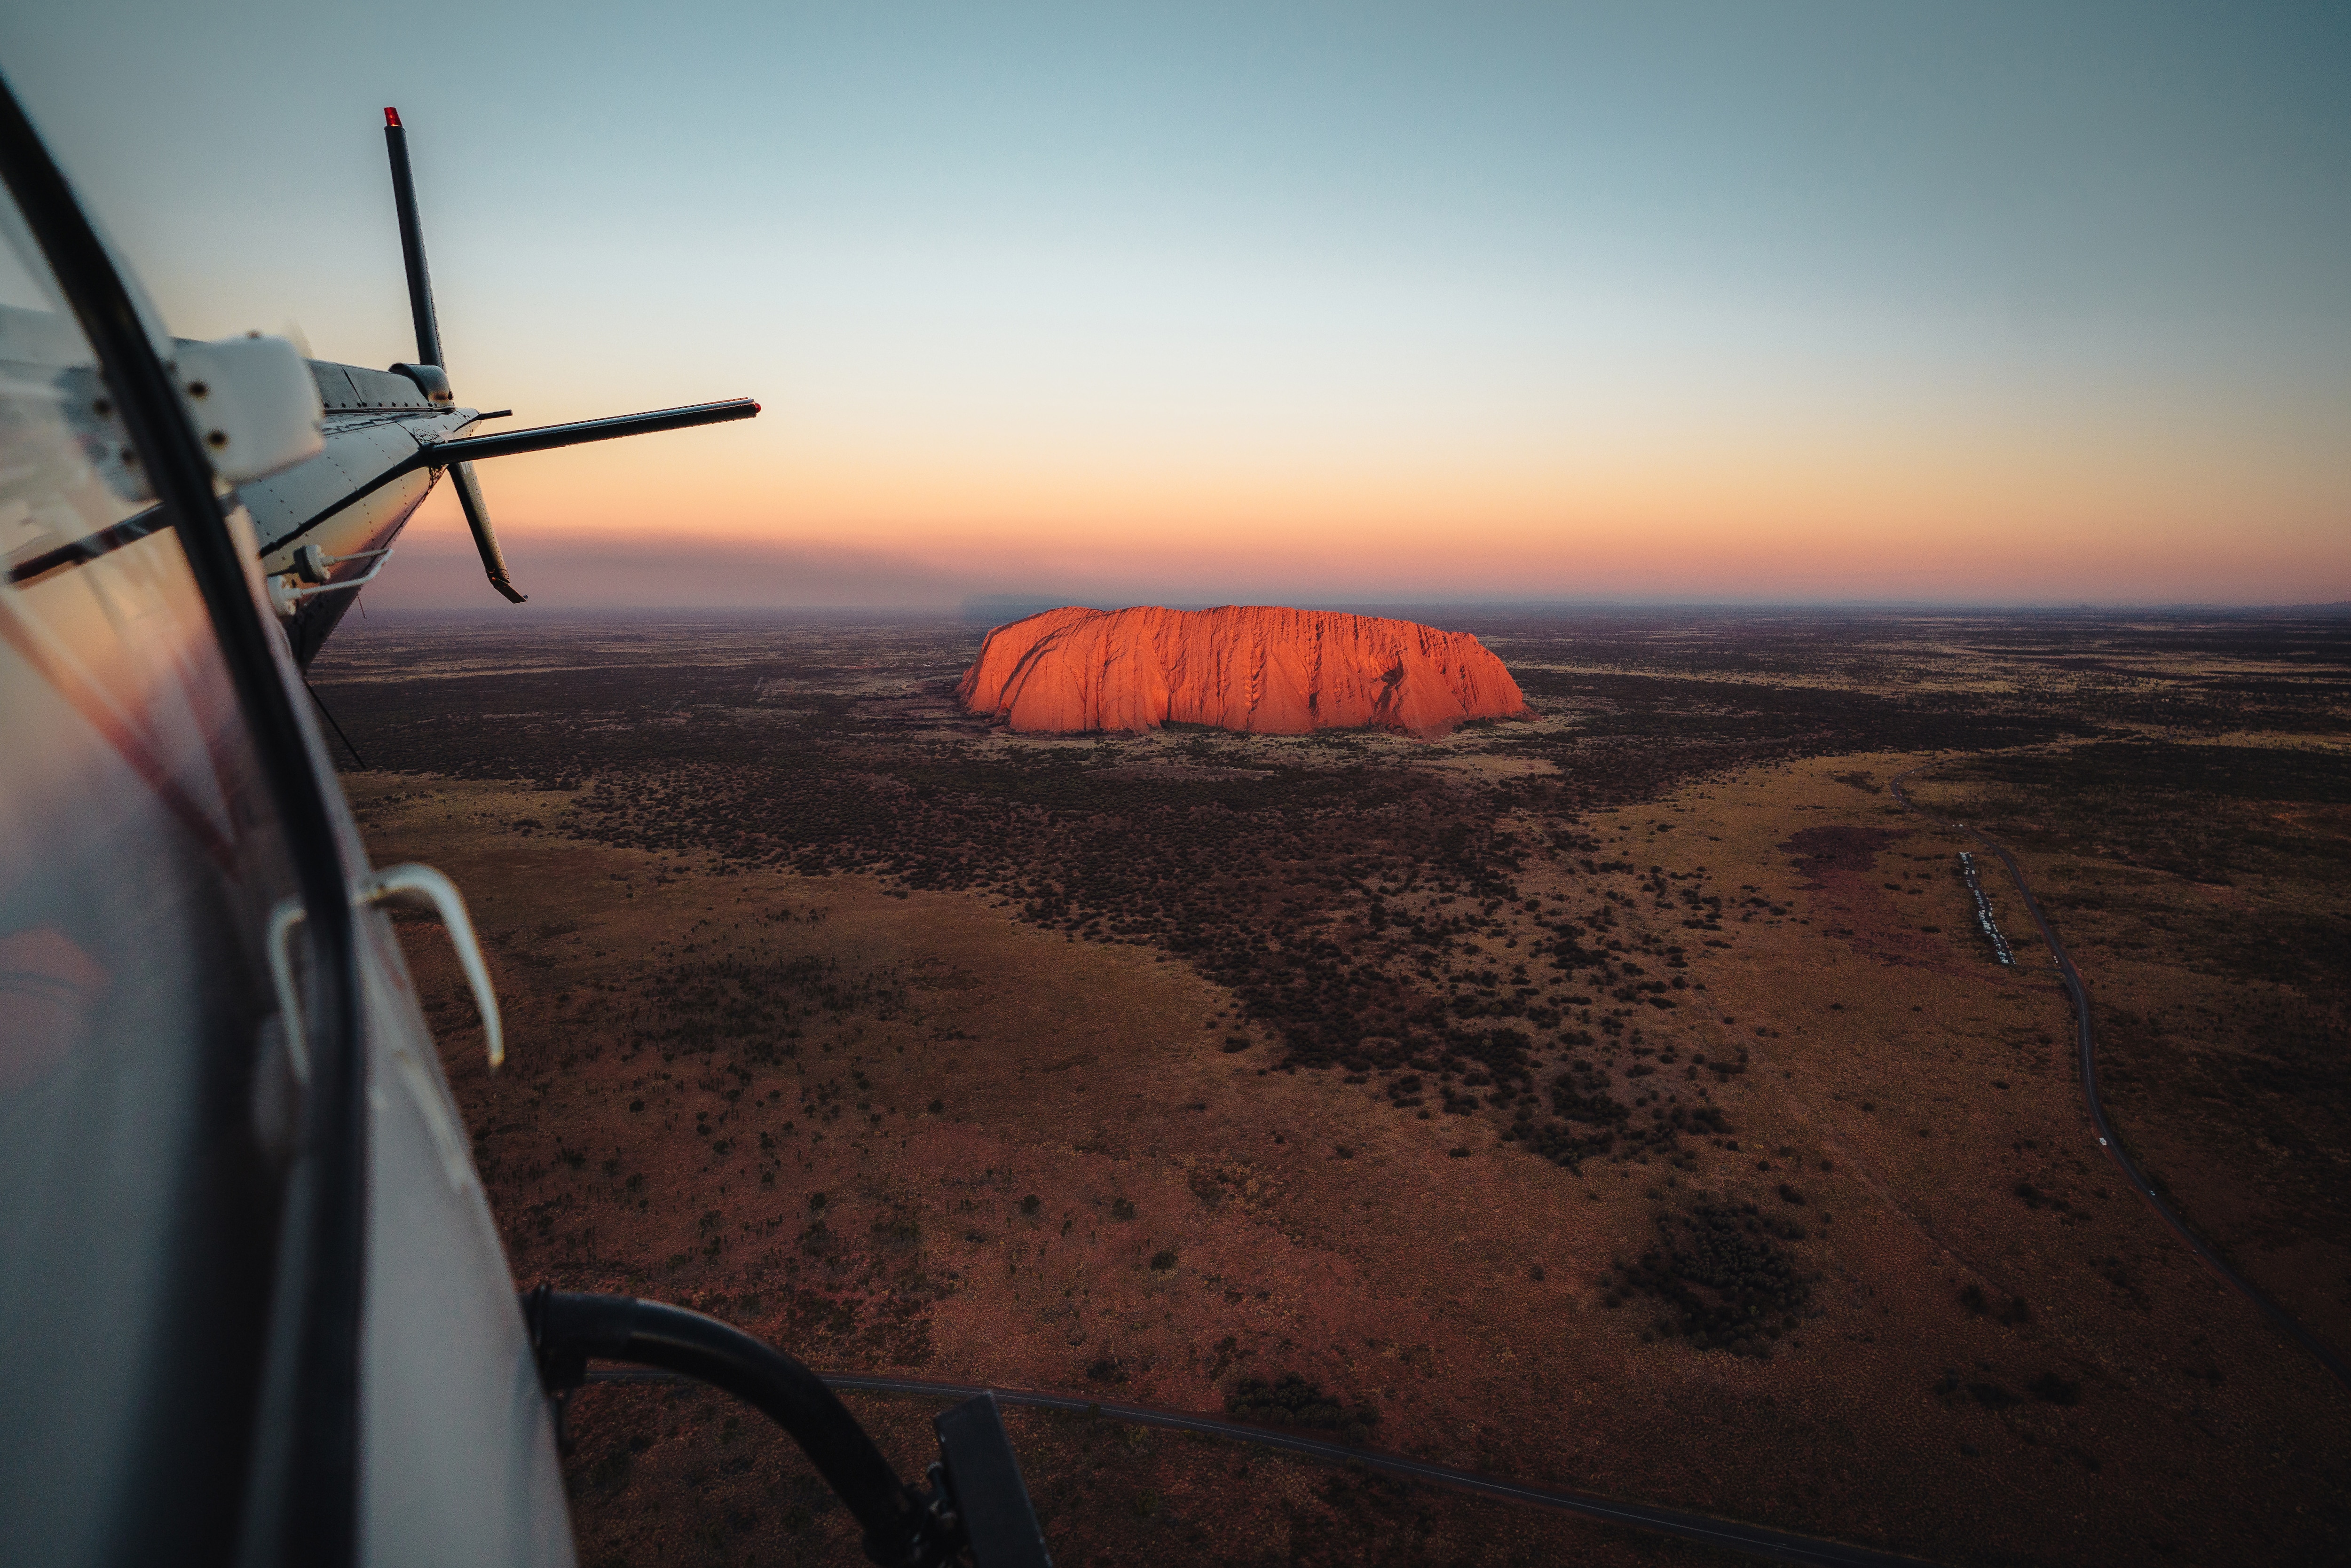 Australian outback experiences - Australia